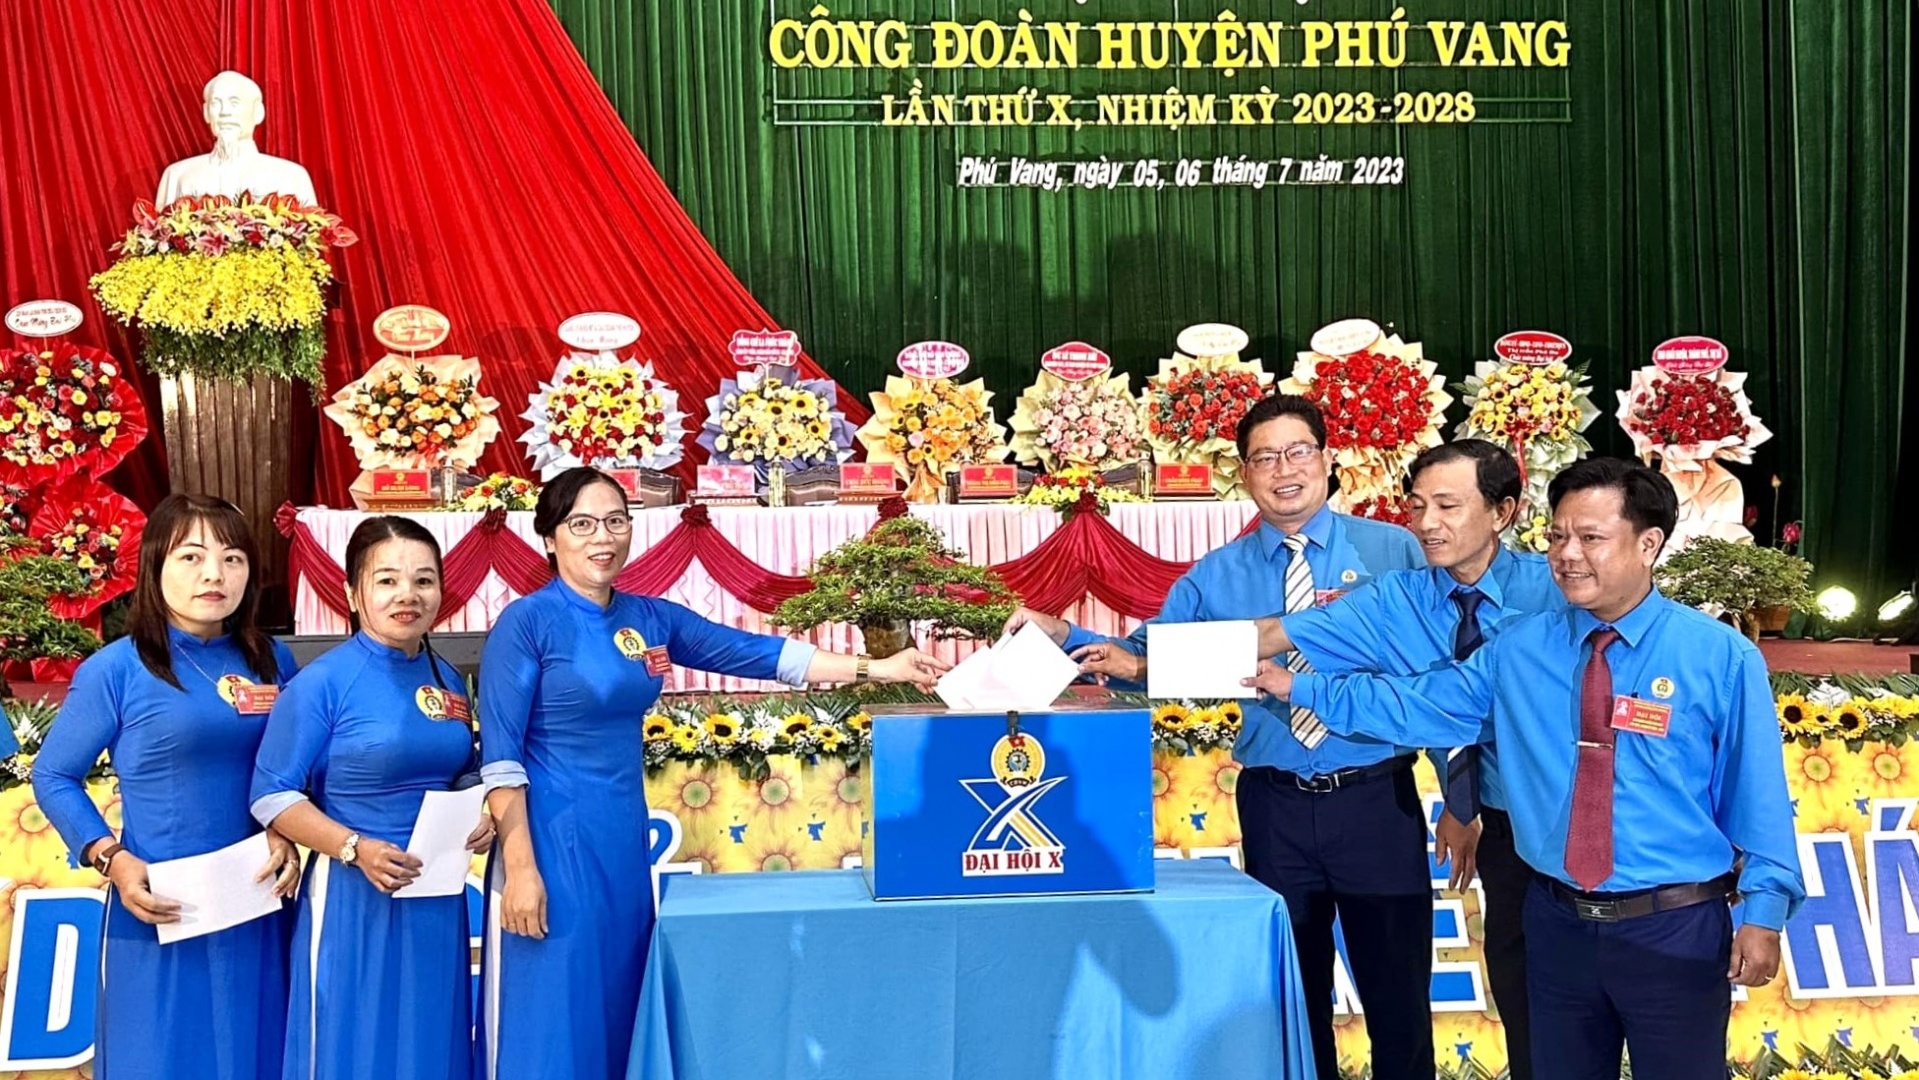 Công đoàn huyện Phú Vang: Nâng cao chất lượng hoạt động để phù hợp với tình hình mới